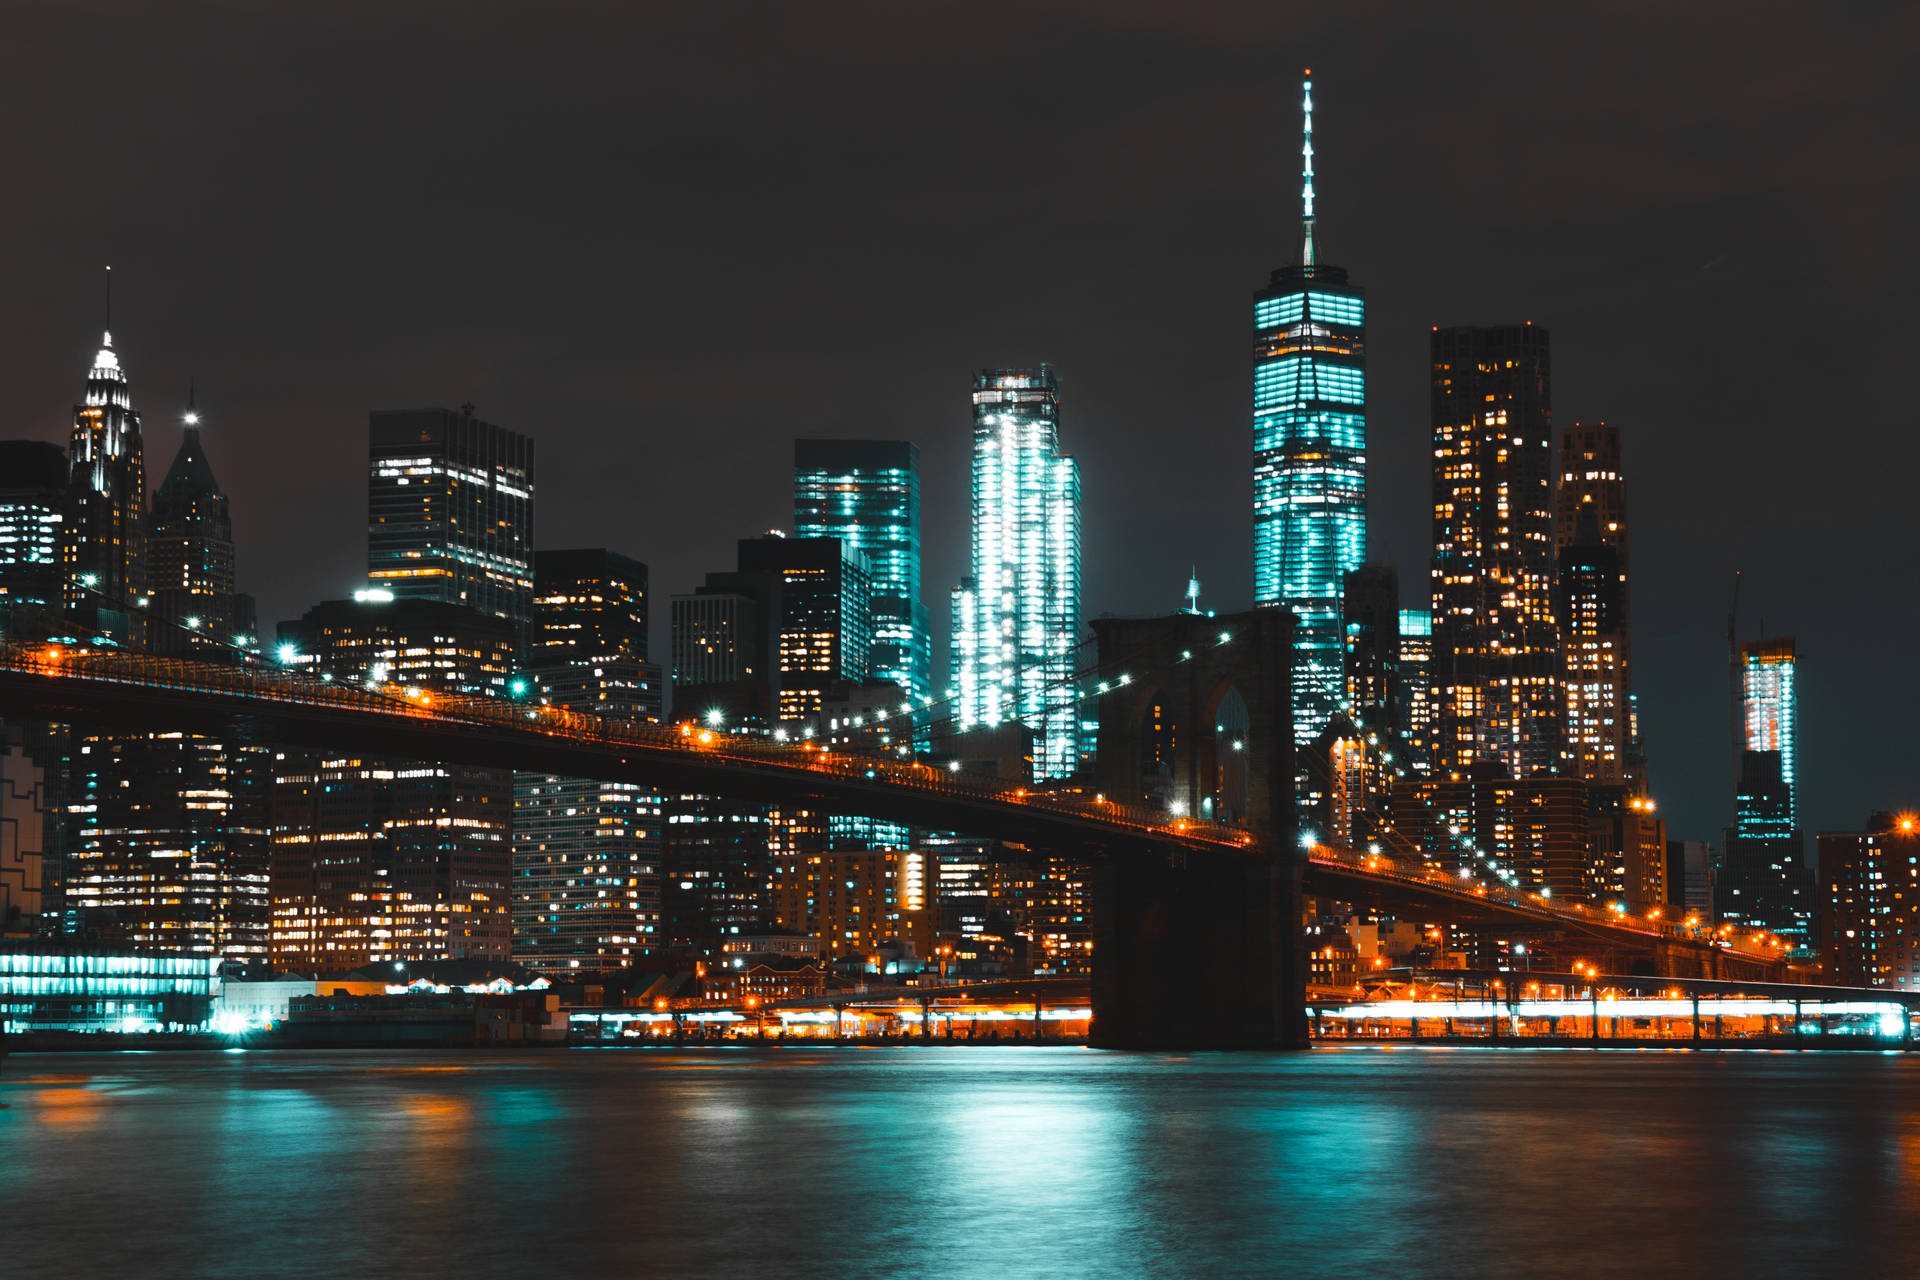 Vistaaérea Das Luzes Brilhantes E Arranha-céus De Nova York Em 4k. Papel de Parede